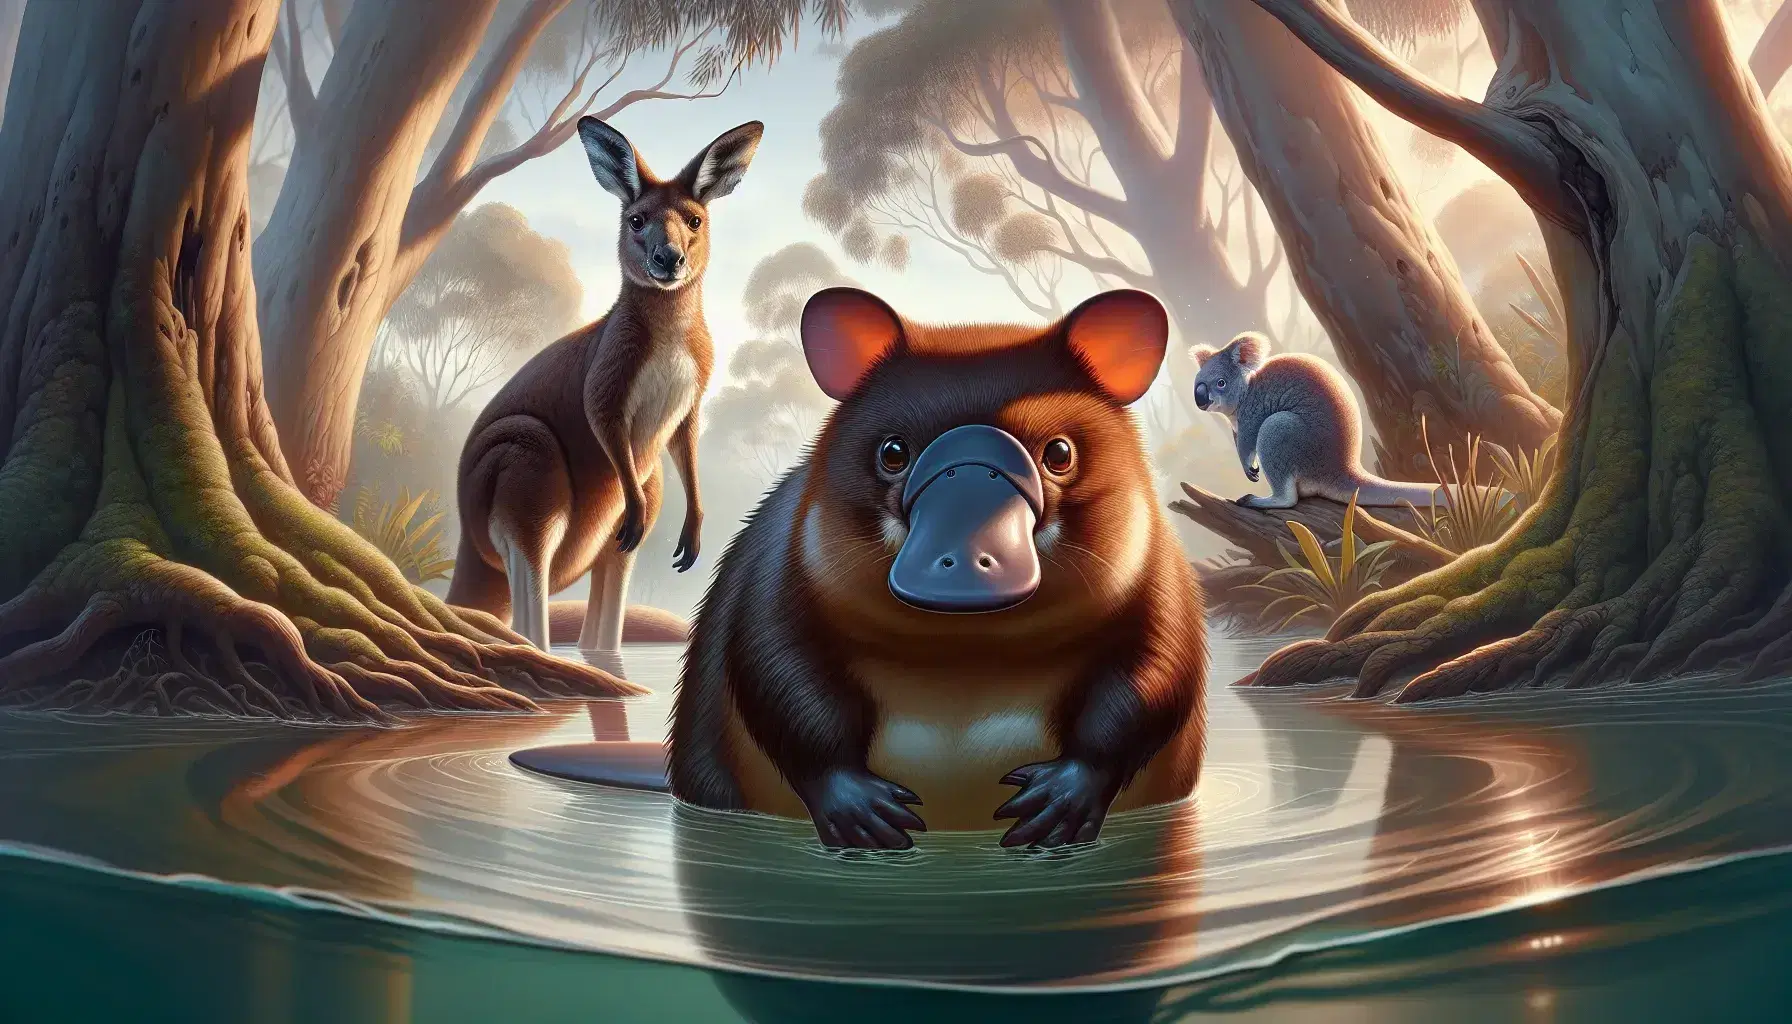 Platypus marrón en agua clara, canguro rojizo en posición erguida y koala gris en rama de eucalipto, en hábitat natural con vegetación.